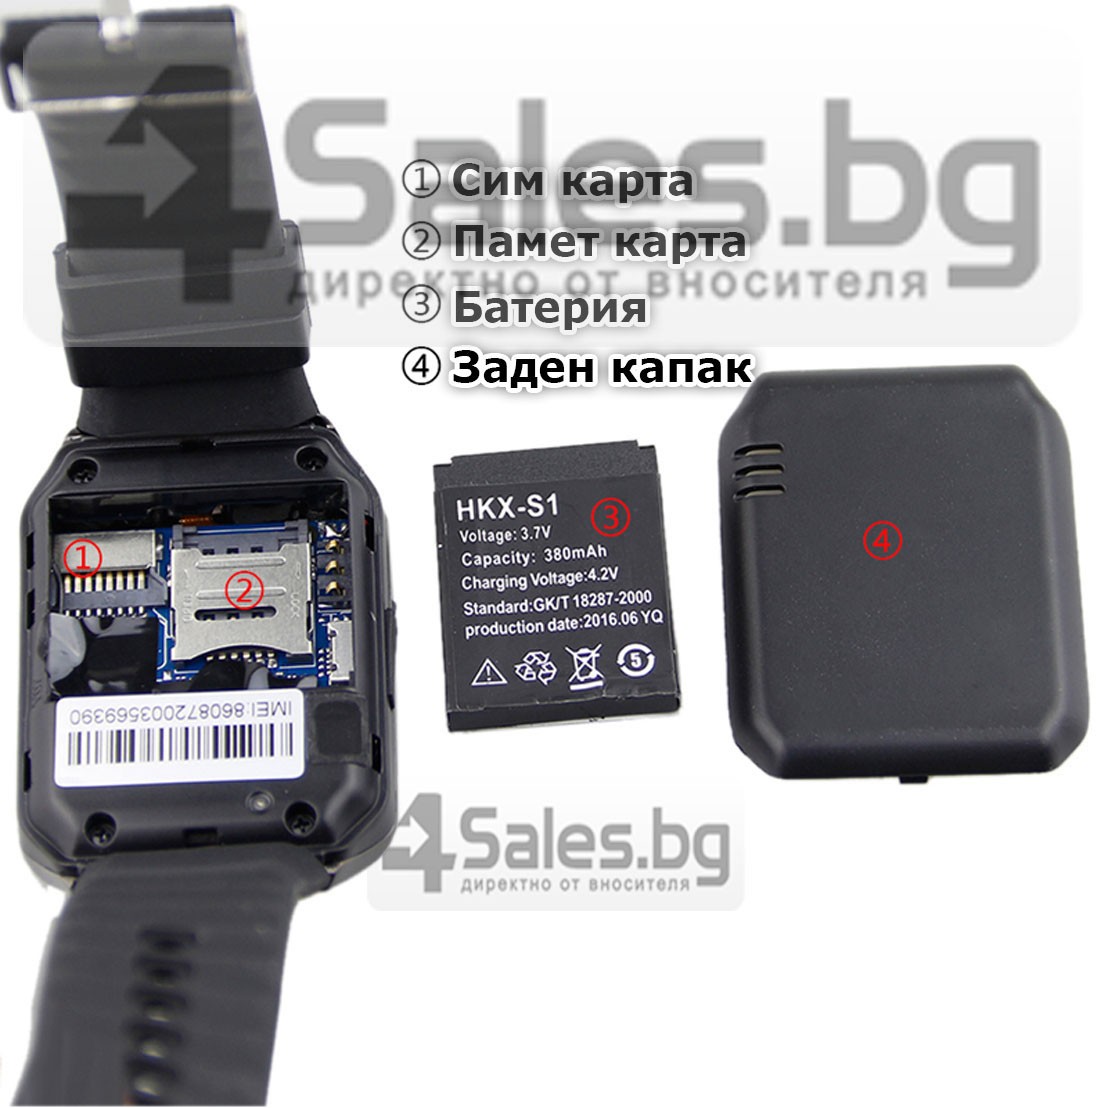 Смарт Часовник телефон с камера и сим карта Оригинален продукт dz09 на Български 43